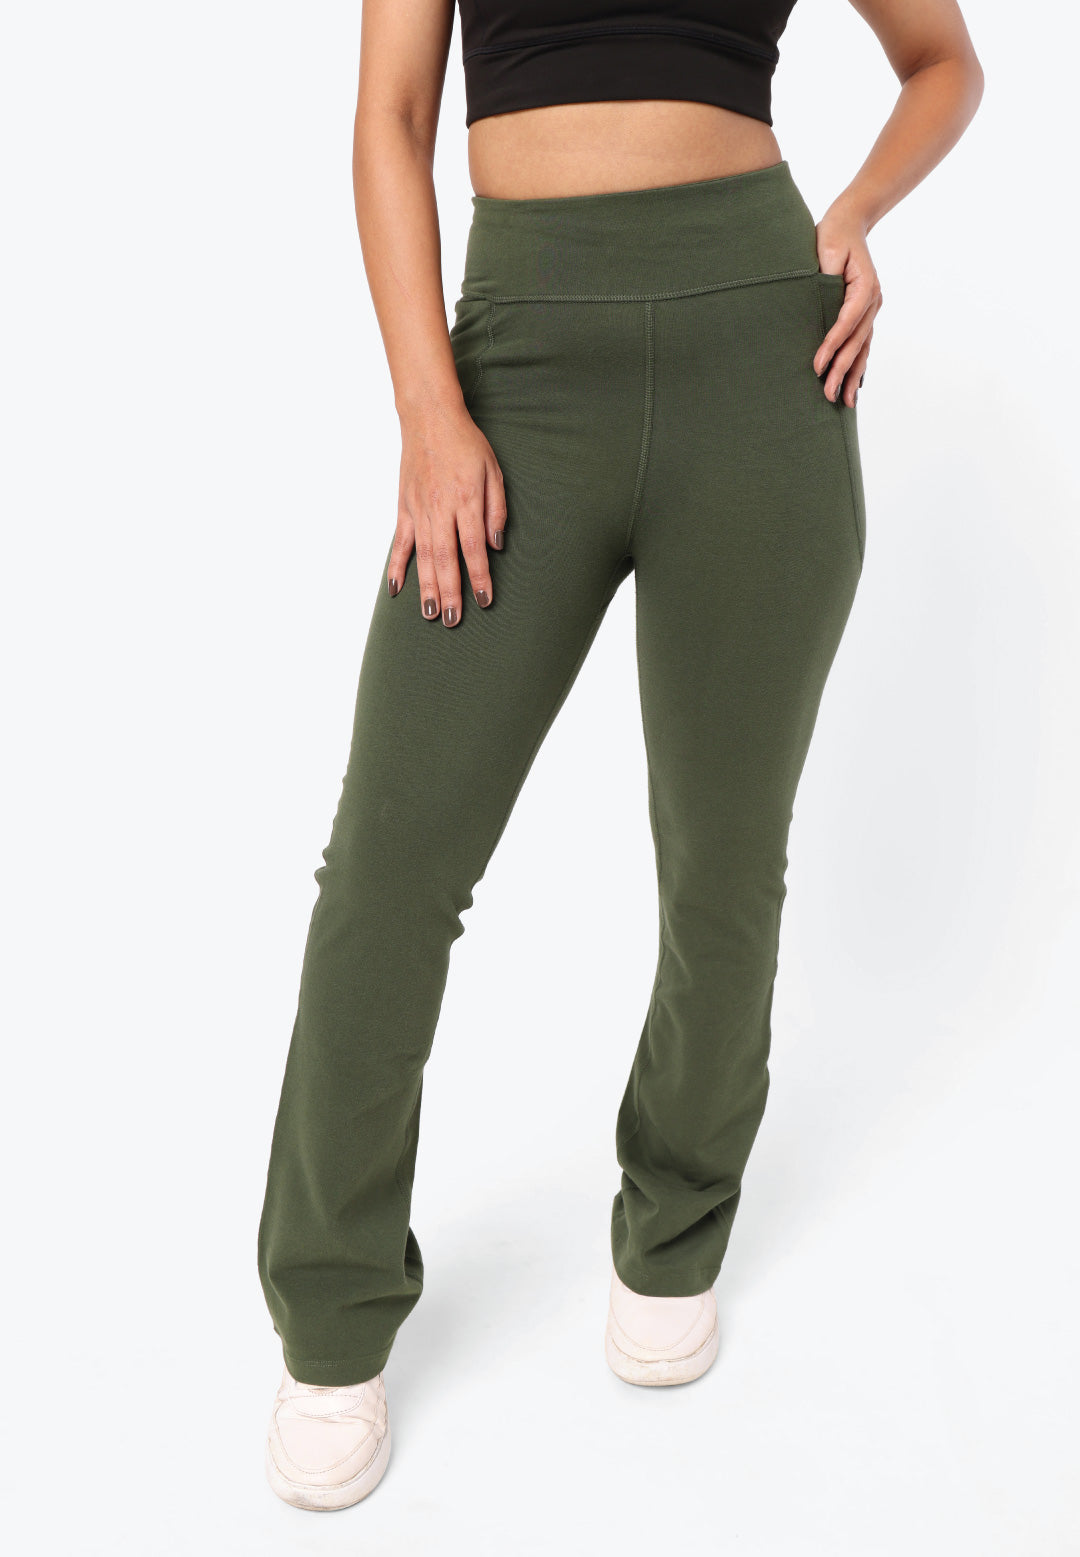 Buy Green Trousers & Pants for Women by BLISSCLUB Online | Ajio.com